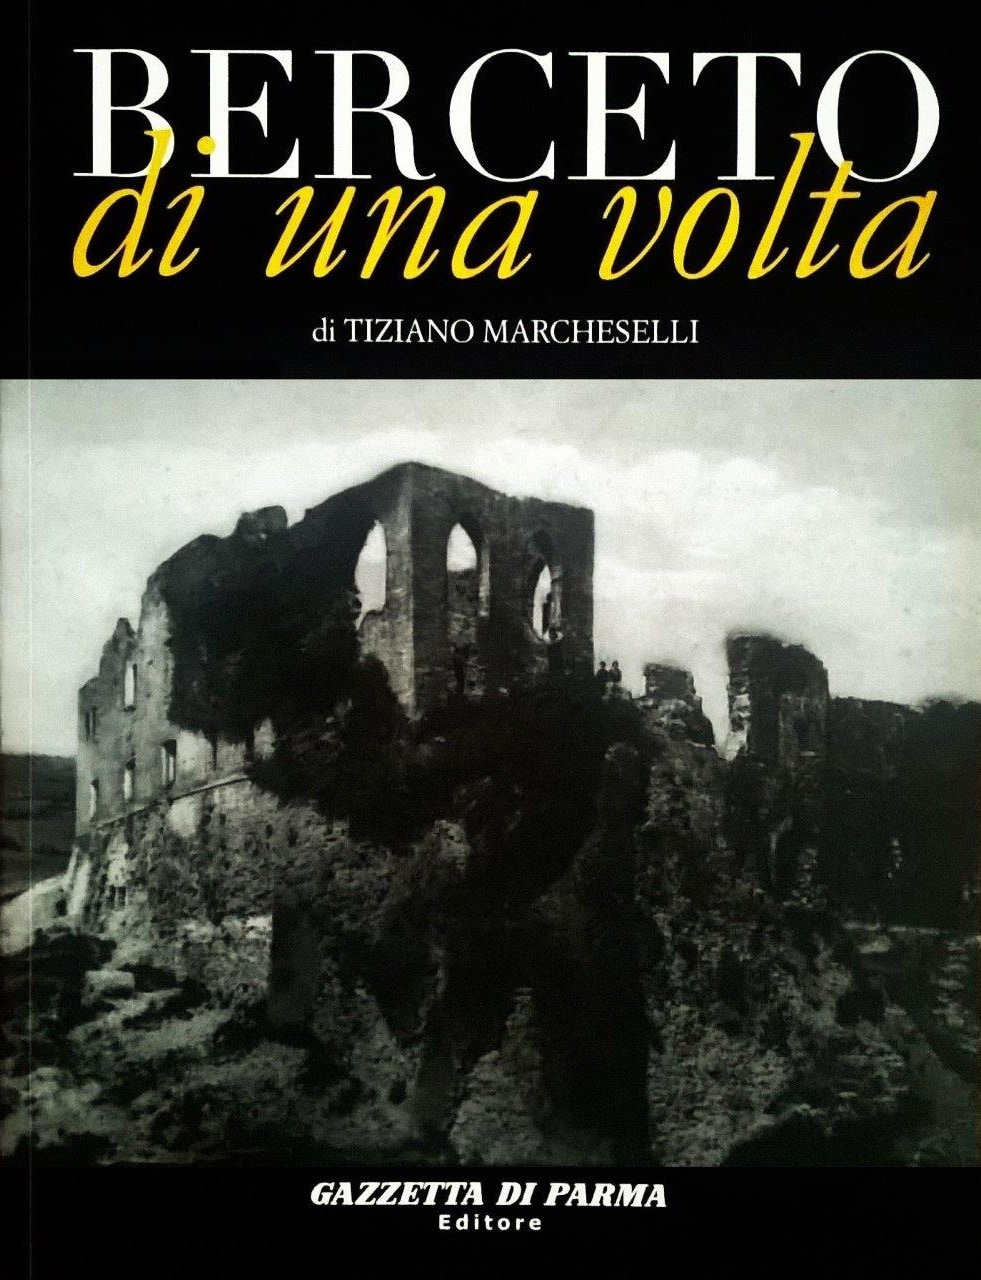 Tiziano Marcheselli, Berceto di una volta, Parma, Gazzetta di Parma Editore (Mup Editore / Grafiche Step), 2007, prefazione di Monsignor Franco Grisenti